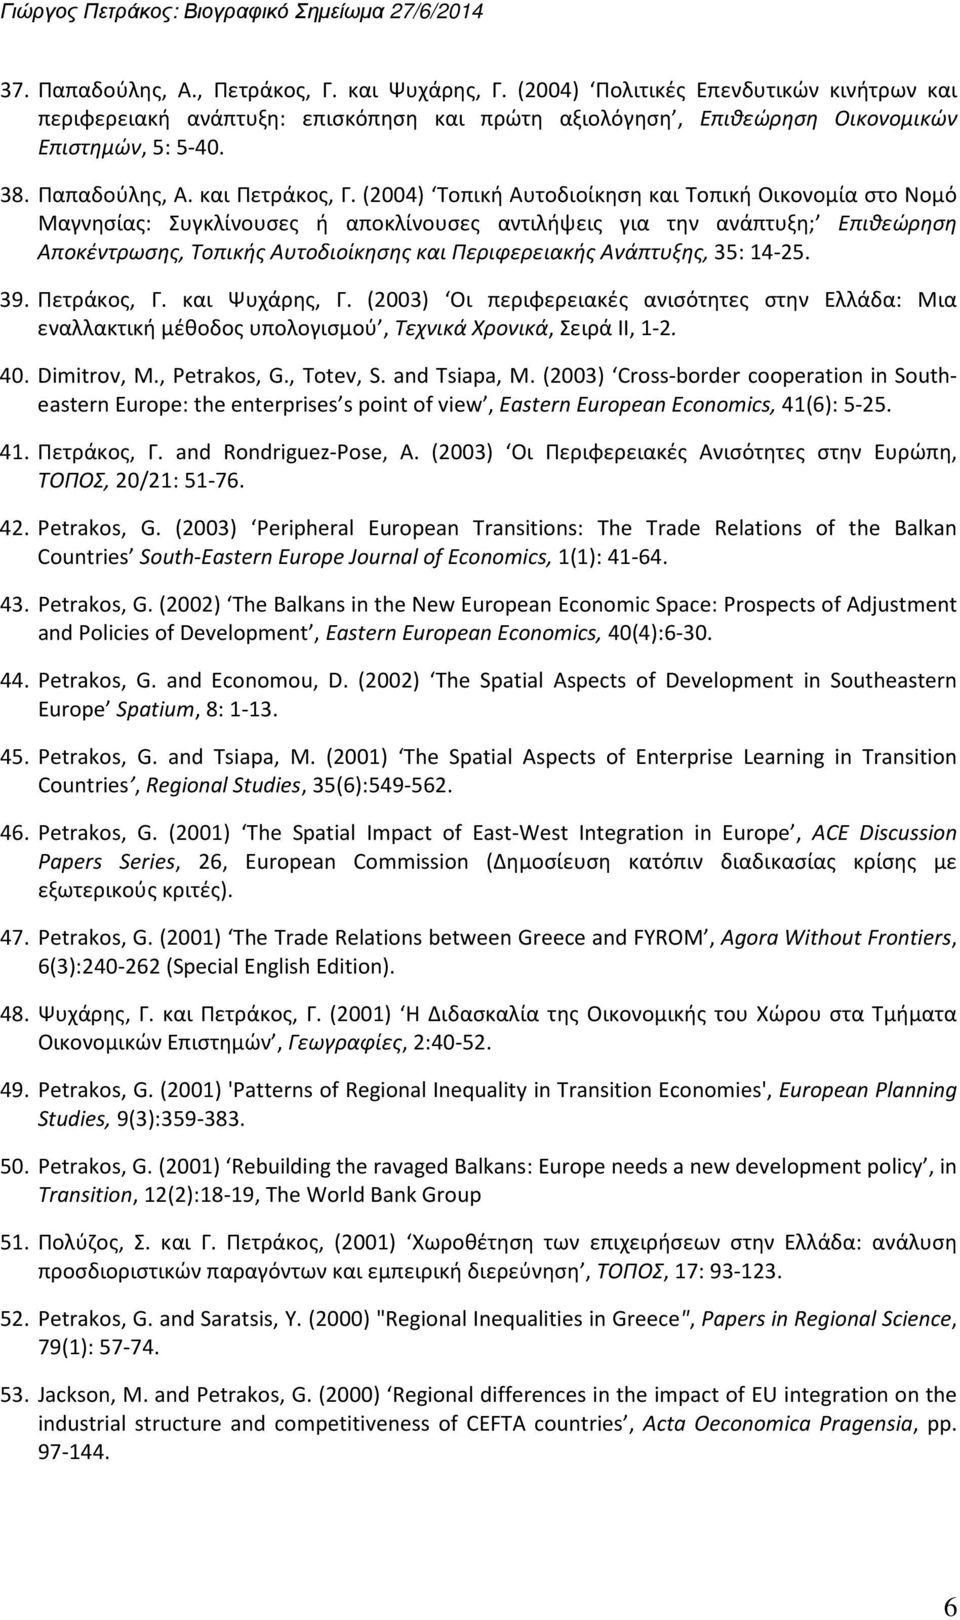 (2004) Τοπική Αυτοδιοίκηση και Τοπική Οικονομία στο Νομό Μαγνησίας: Συγκλίνουσες ή αποκλίνουσες αντιλήψεις για την ανάπτυξη; Επιθεώρηση Αποκέντρωσης, Τοπικής Αυτοδιοίκησης και Περιφερειακής